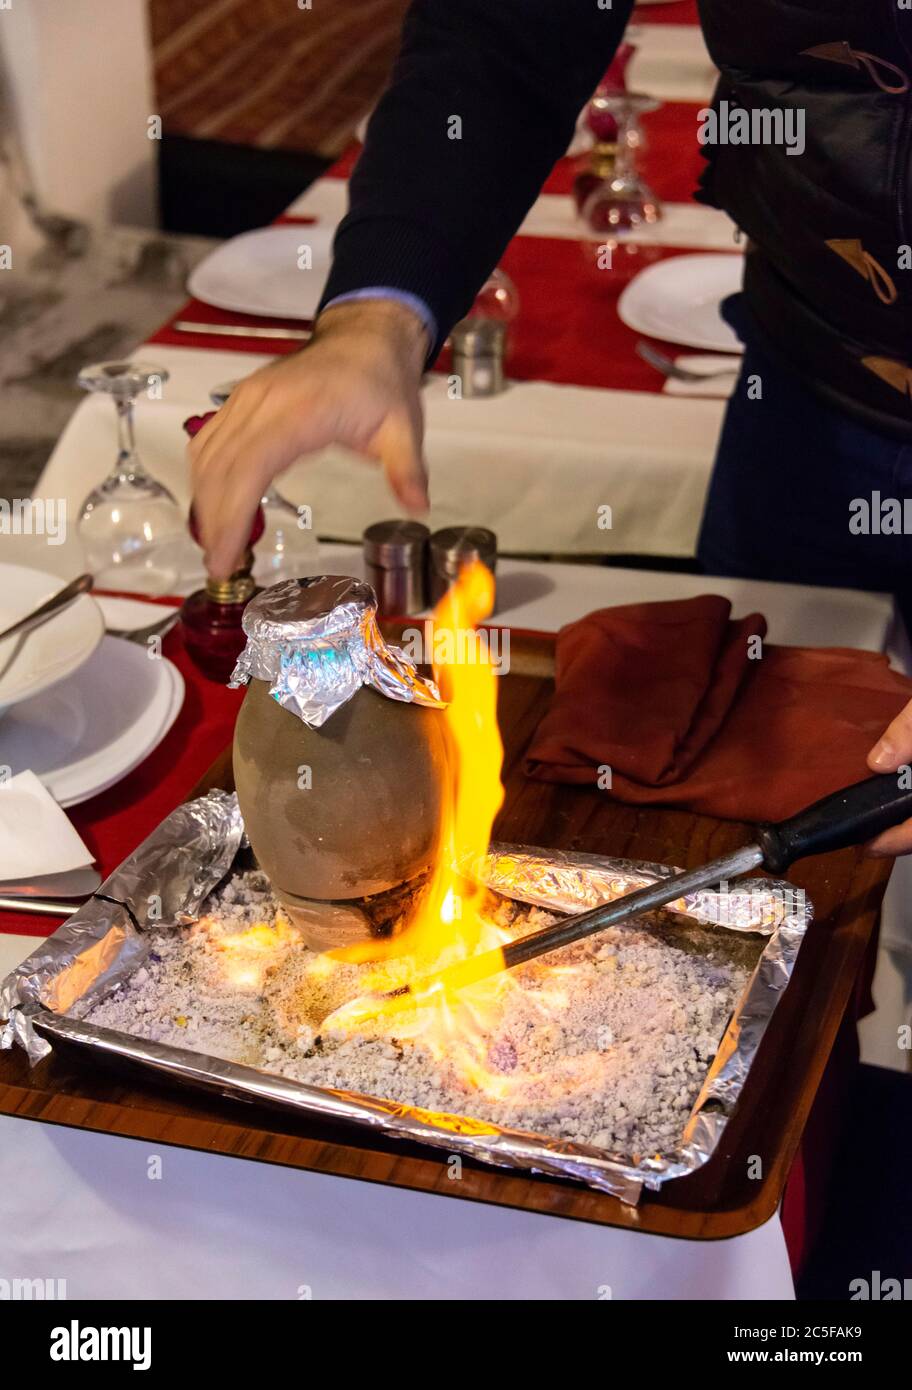 Testi Kebab è servito con il fuoco in un ristorante, Kebab brasato in una pentola di terracotta, tipico piatto turco della Cappadocia, Istanbul, Turchia Foto Stock